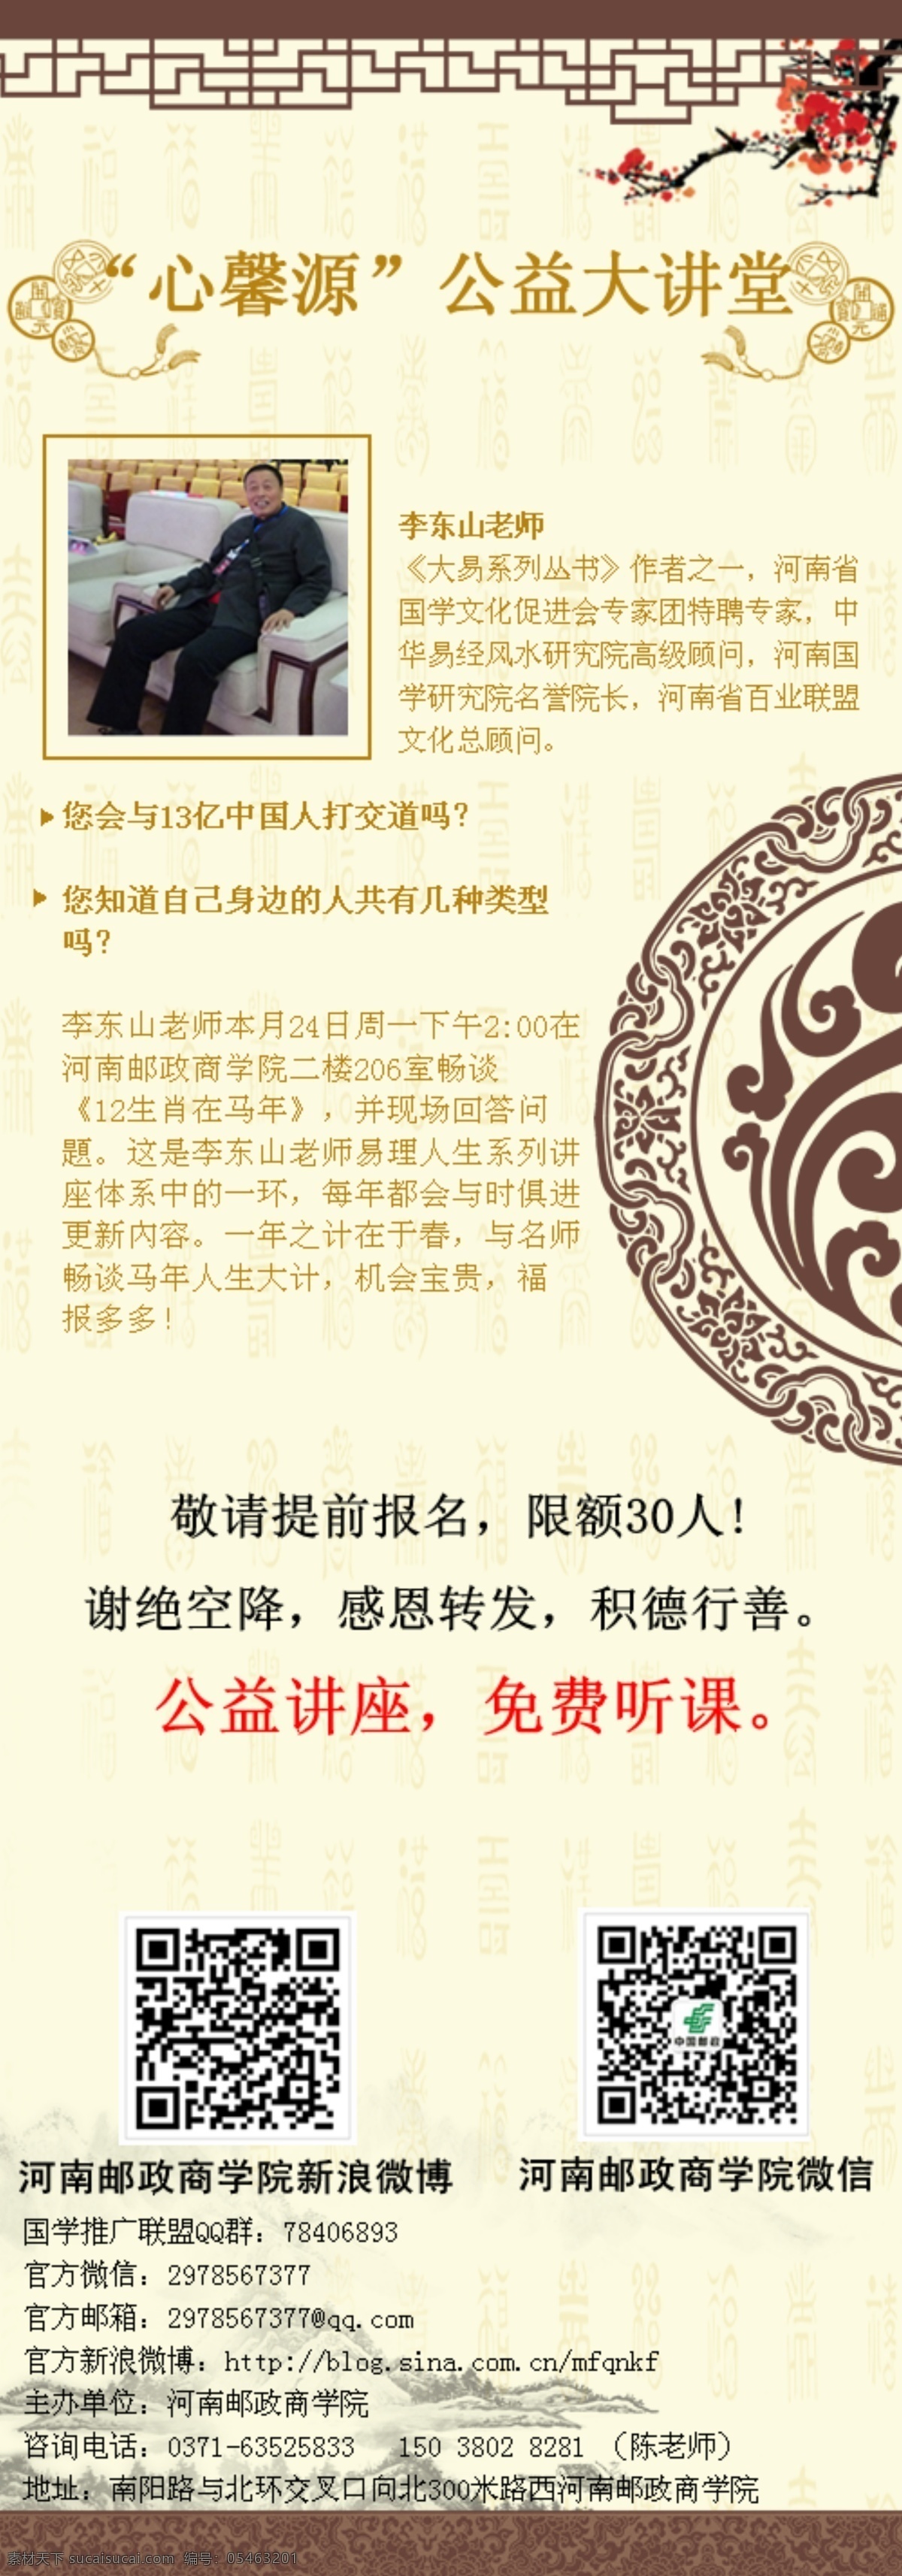 中国 风微 信博 宣传 中国风 微信宣传设计 微博宣传设计 博客宣传设计 国学宣传设计 中文模板 网页模板 源文件